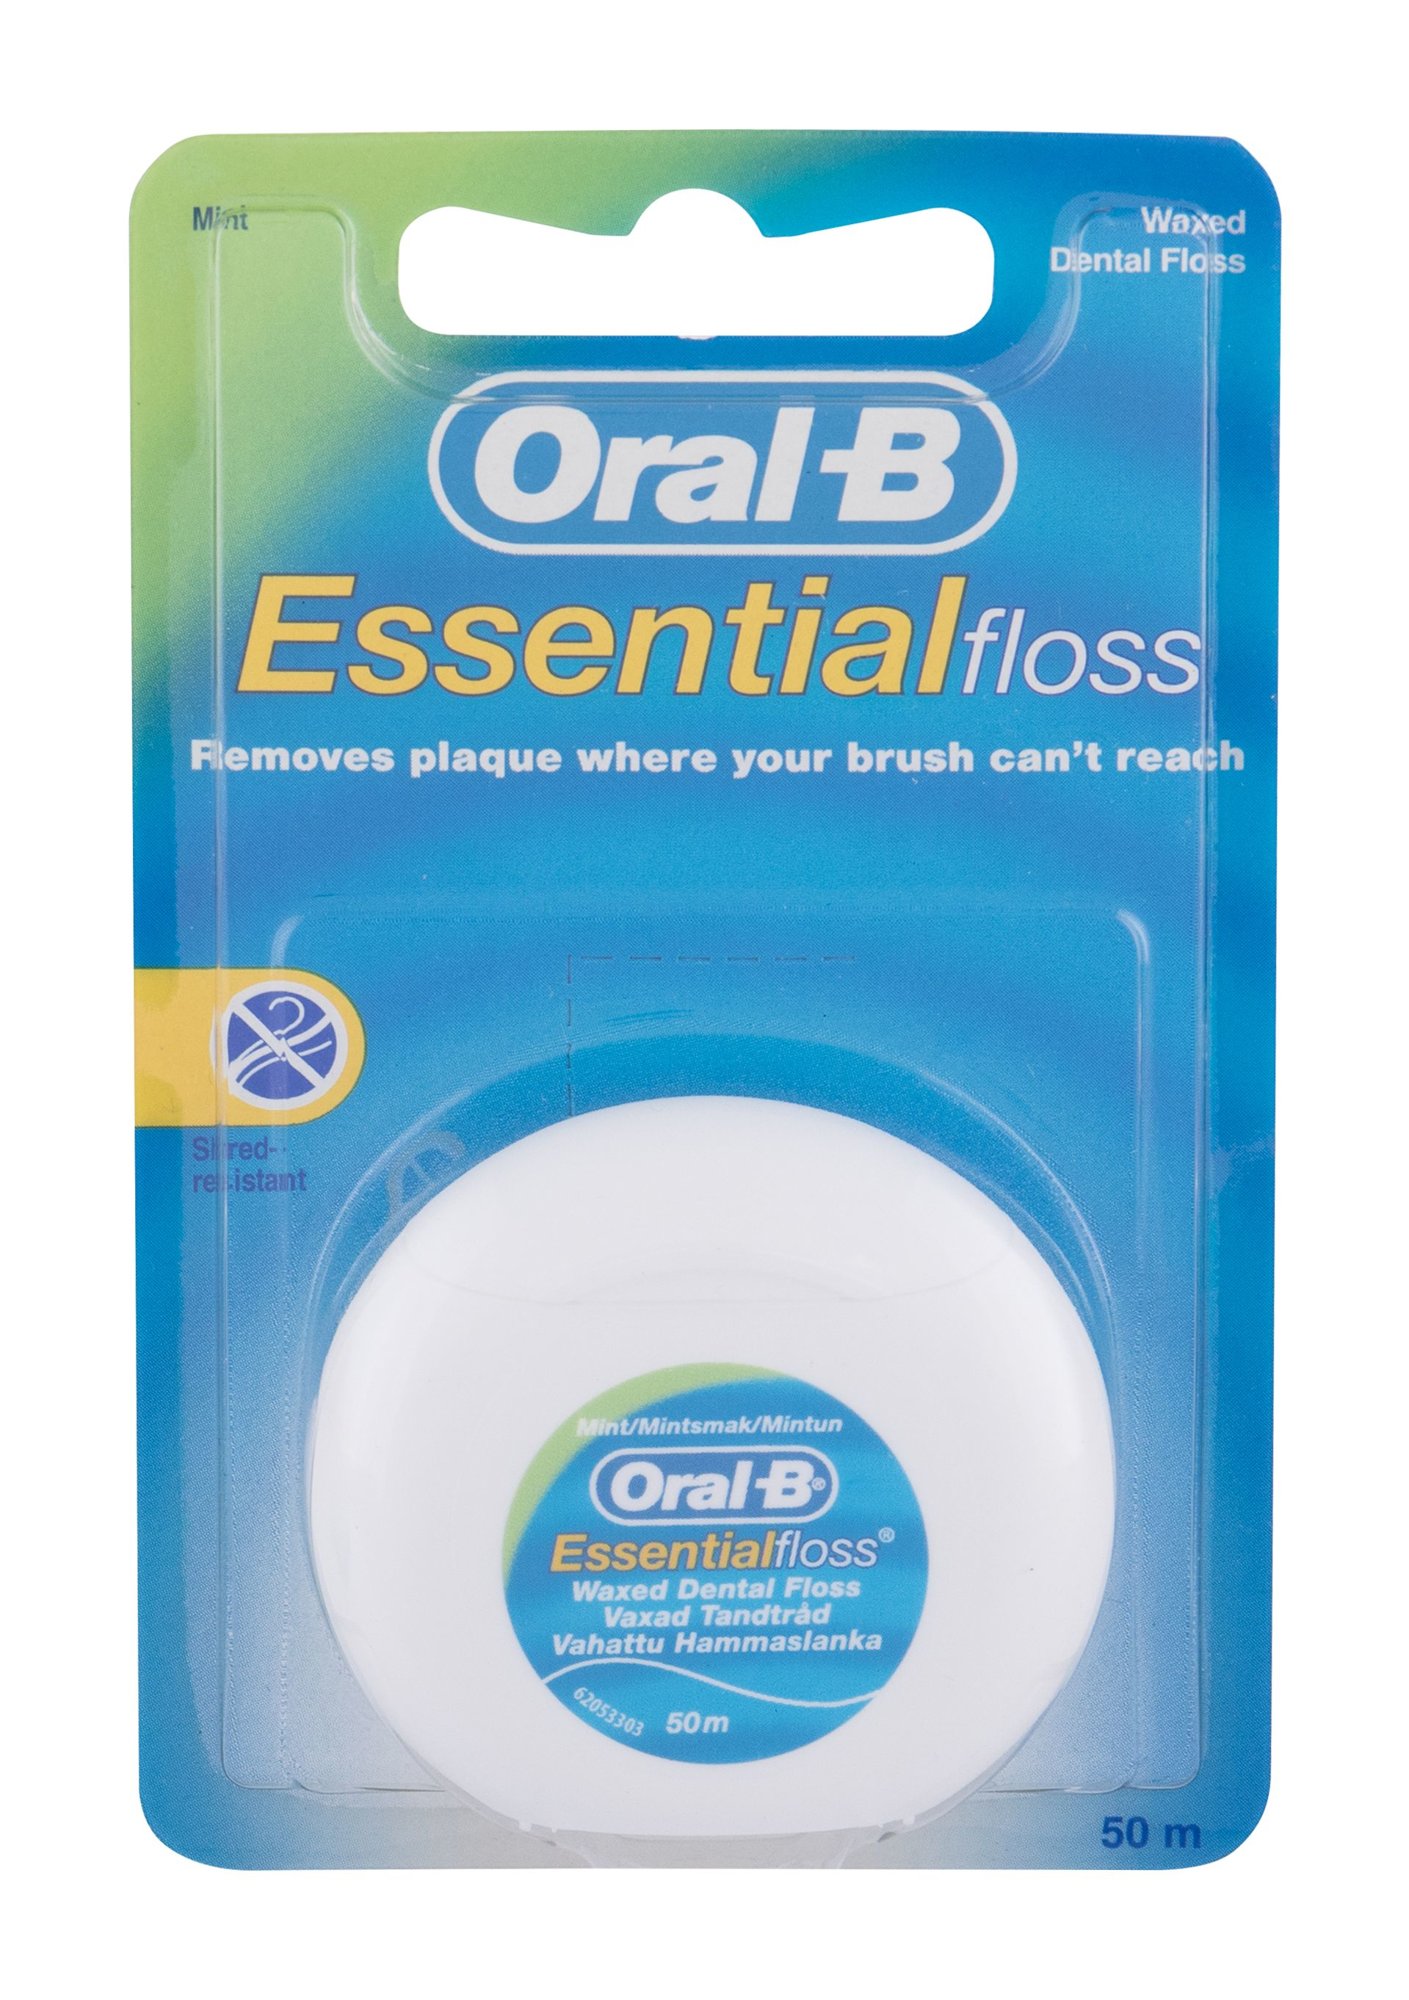 ORAL-B Essential Floss tarpdančių siūlas